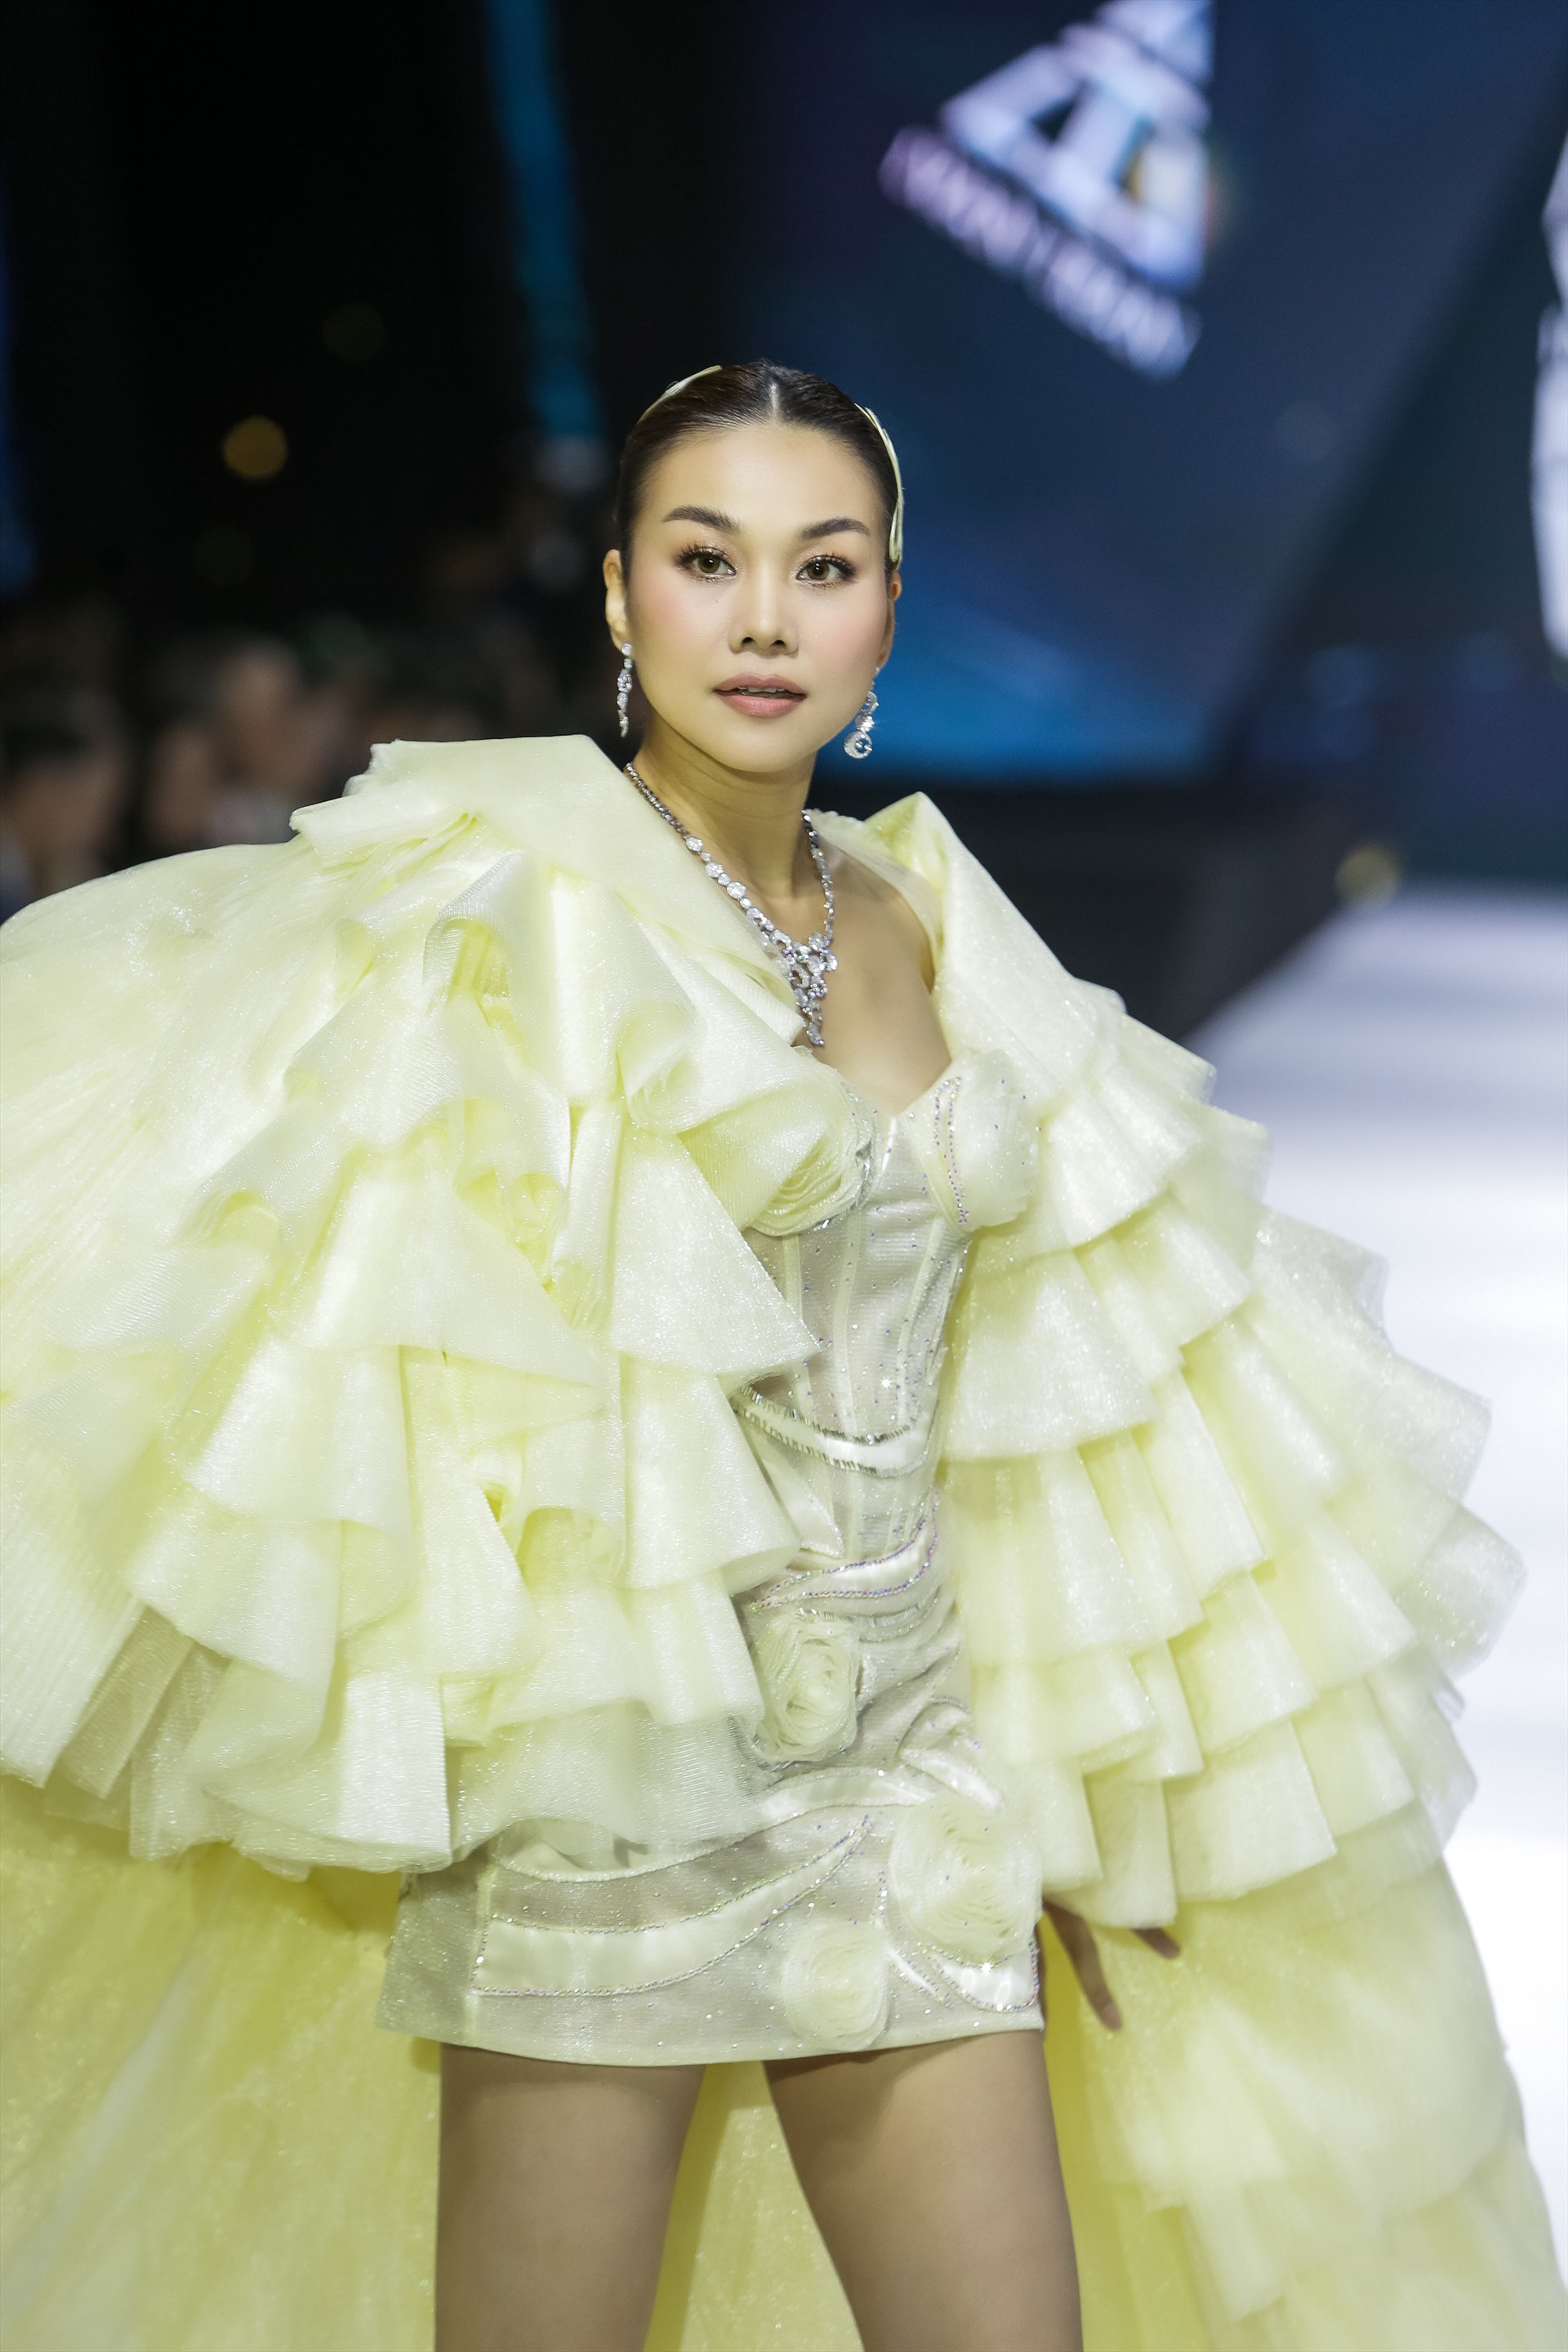 Đáng chú ý, Thanh Hằng đeo bộ trang sức kim cương trị giá đến 2 tỉ đồng để “chốt show” lần này cho nhà thiết kế Ivan Trần.  